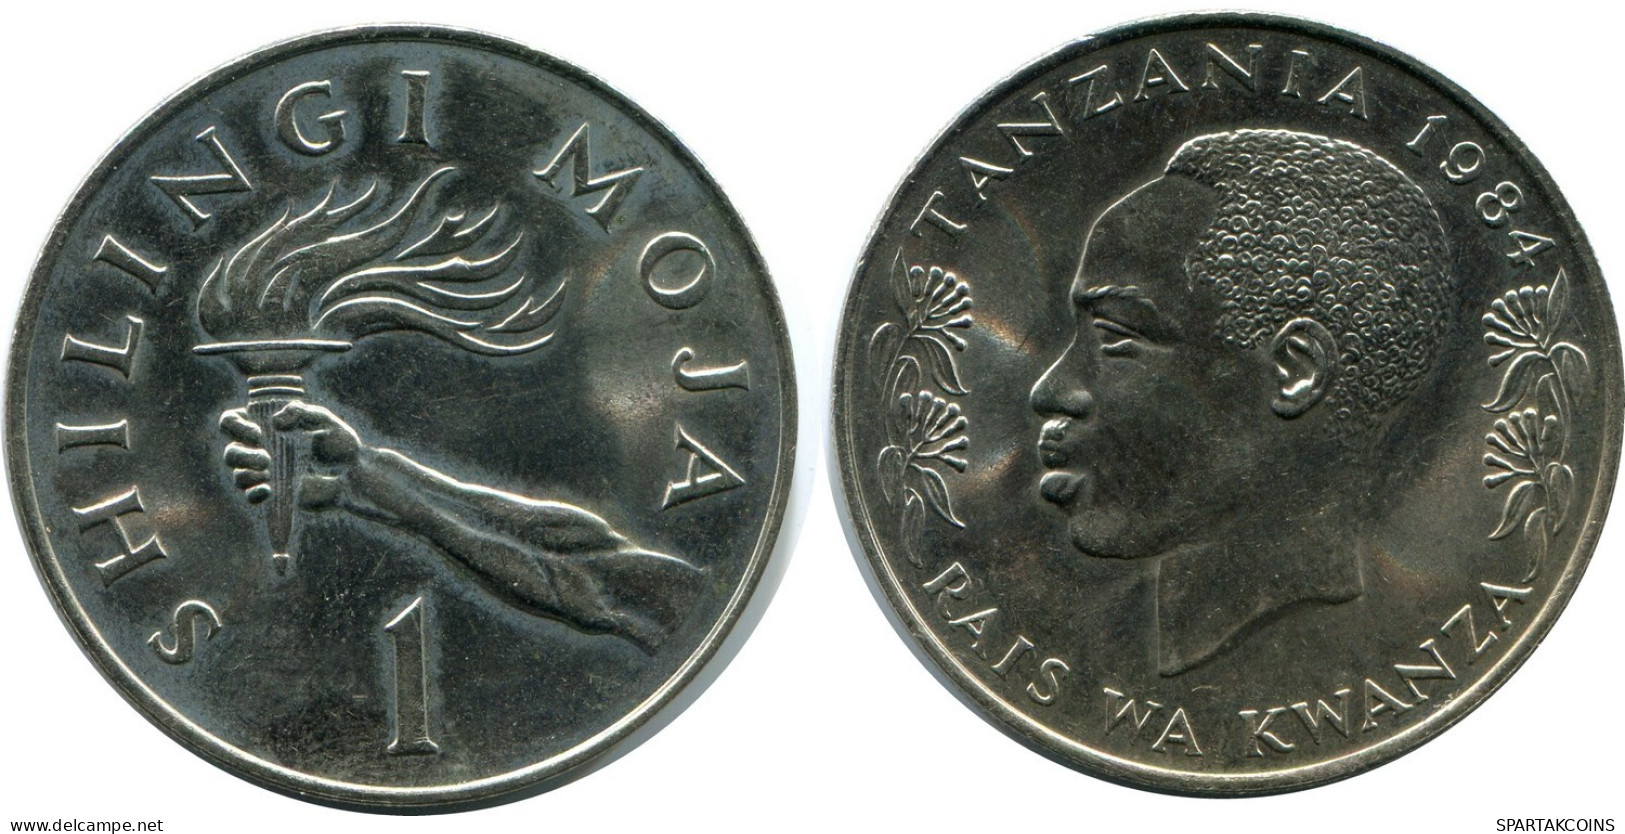 1 SHILINGI 1984 TANZANIA Coin #AZ088.U.A - Tanzania